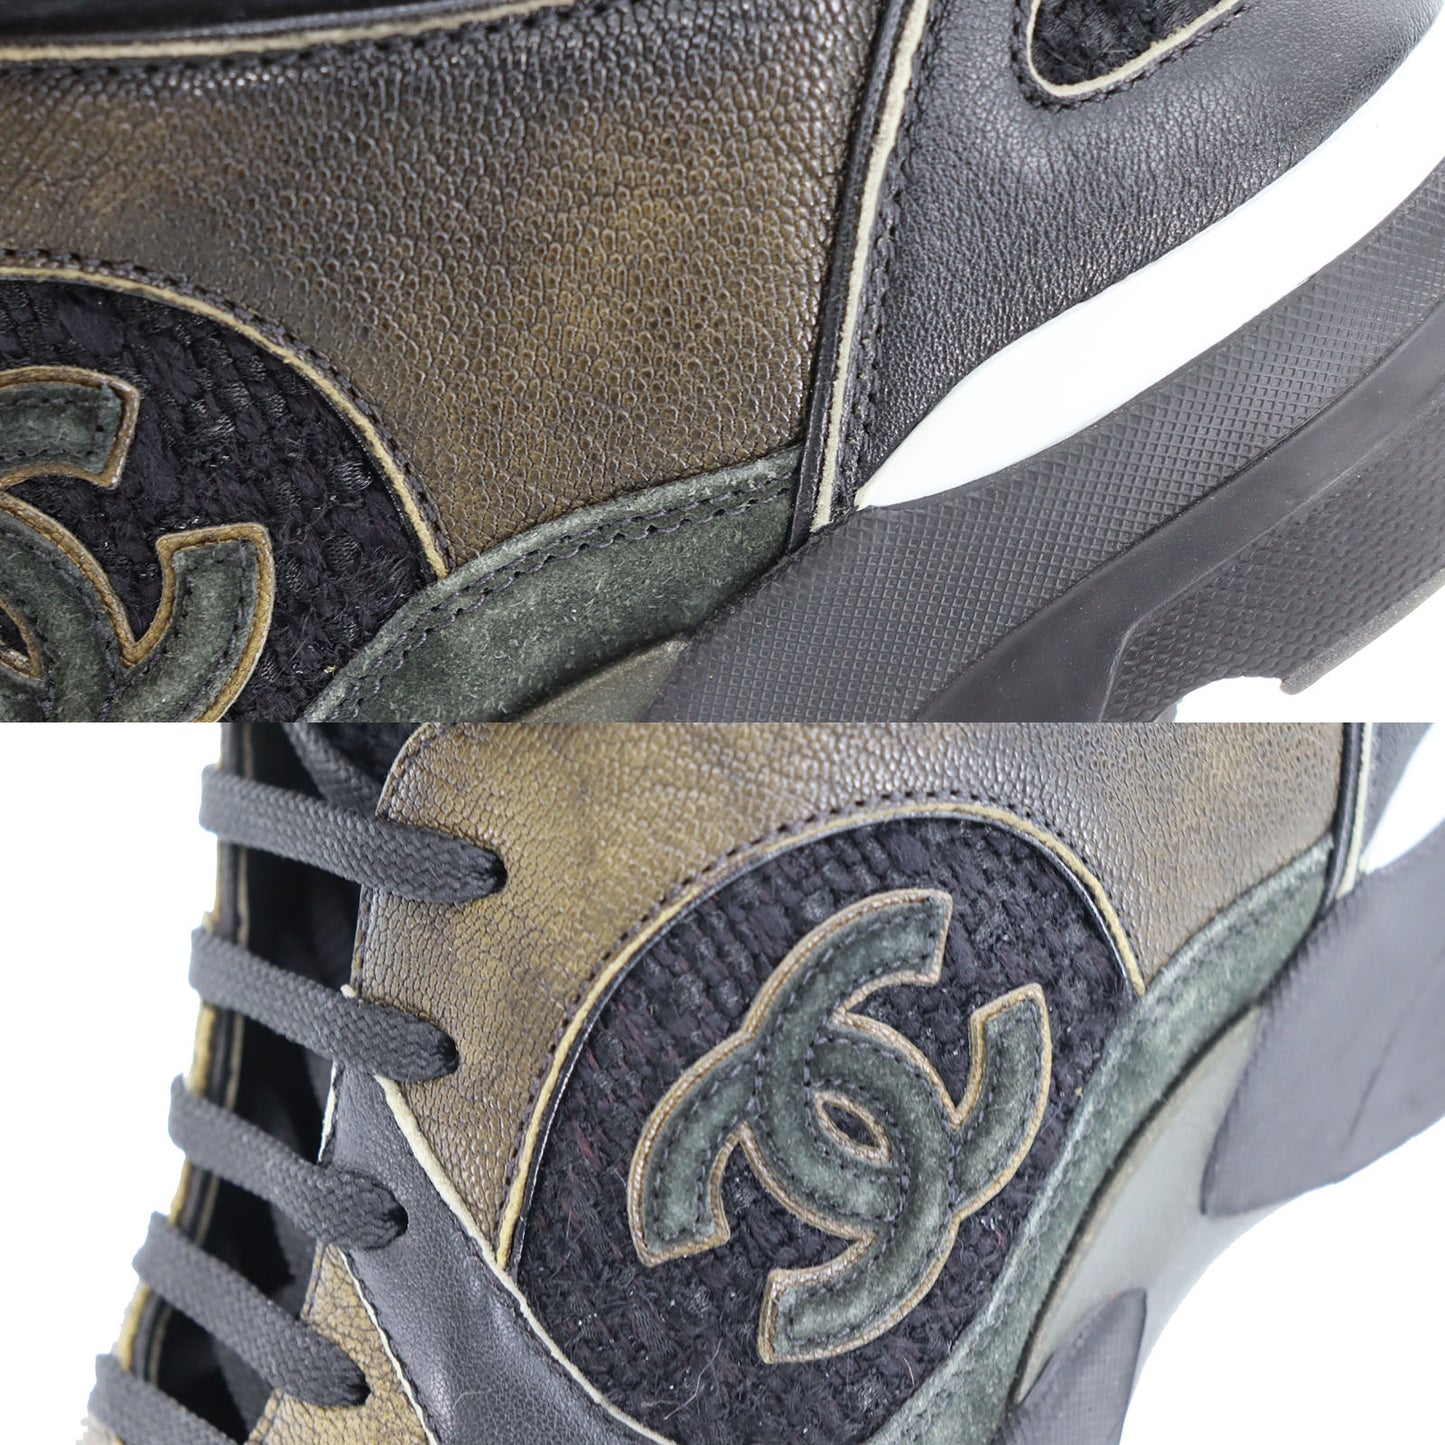 CHANEL Sneakers Tweed Black Suede Leather 40 1/2 #AH563